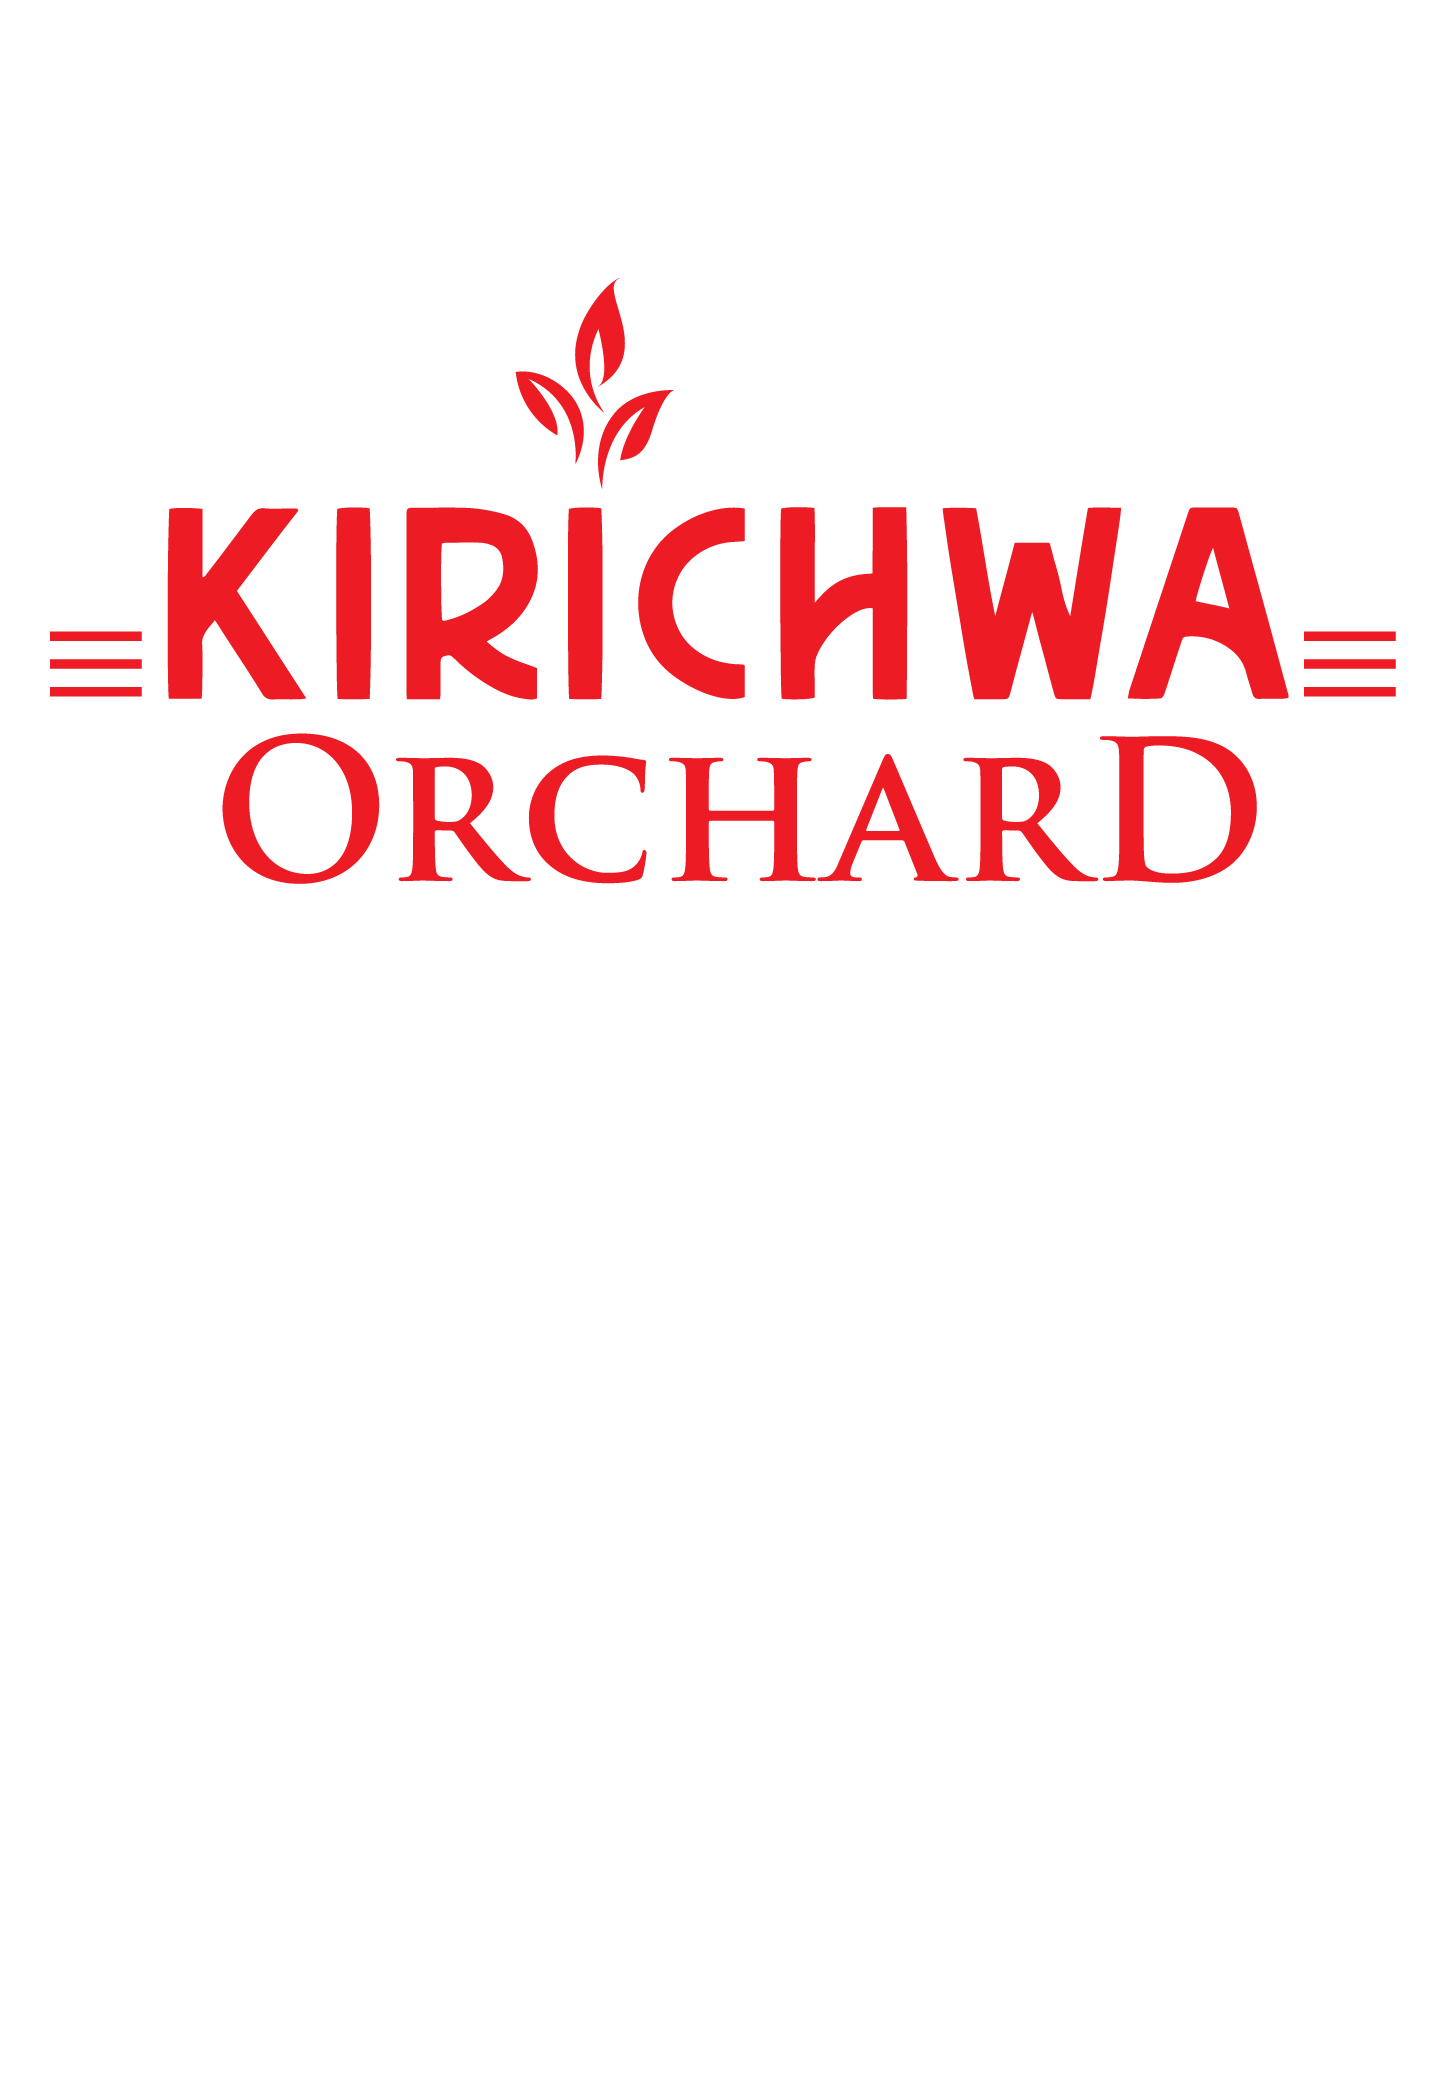 KIRICHWA LOGO- final fro web-02